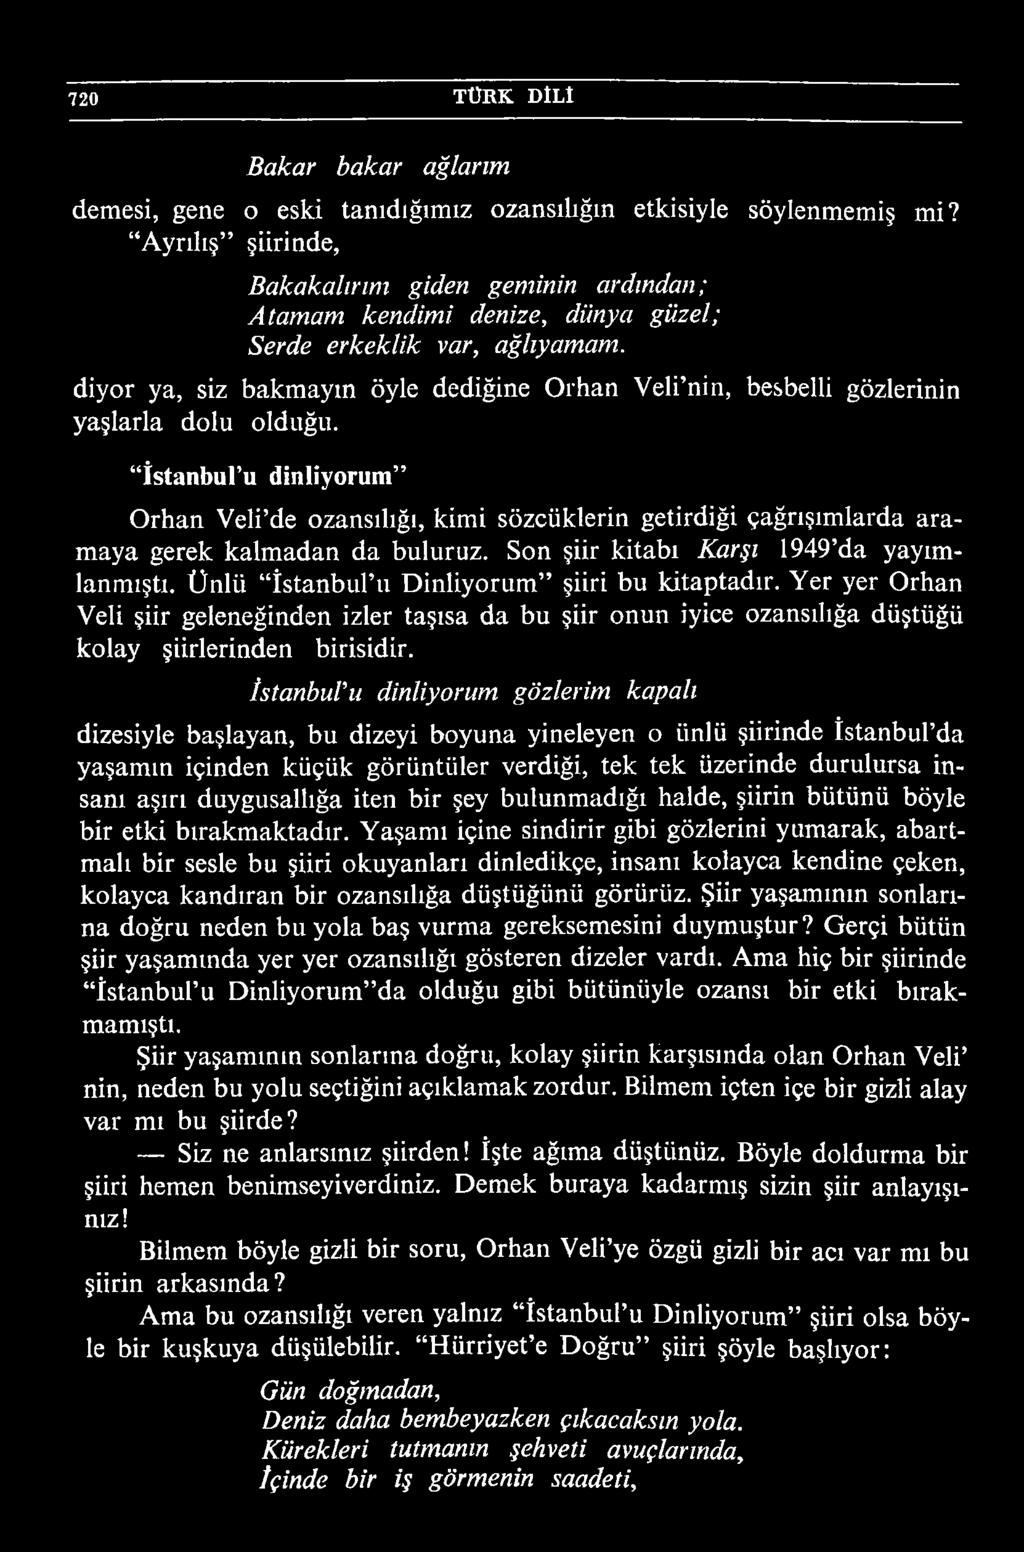 Ünlii İstanbul u Dinliyorum şiiri bu kitaptadır. Yer yer Orhan Veli şiir geleneğinden izler taşısa da bu şiir onun iyice ozansılığa düştüğü kolay şiirlerinden birisidir.